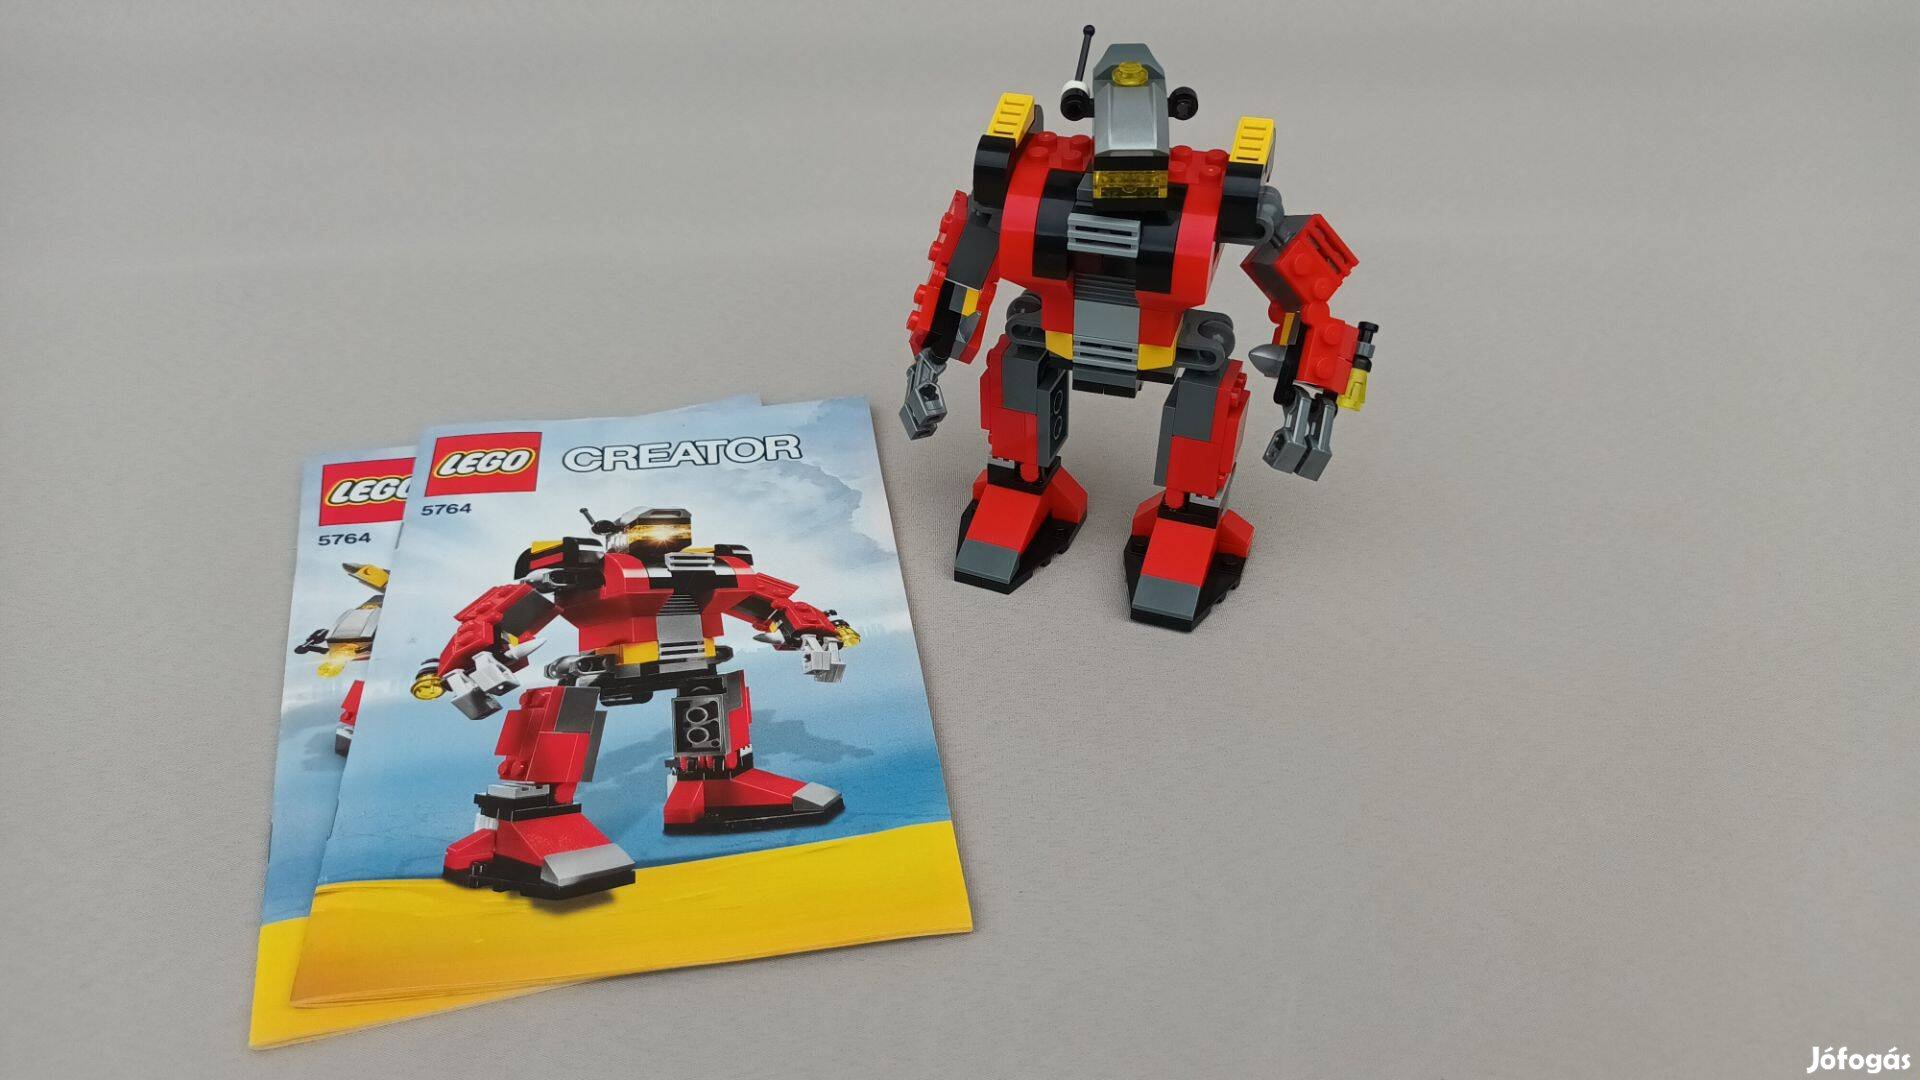 LEGO 5764 Creator Rescue Robot